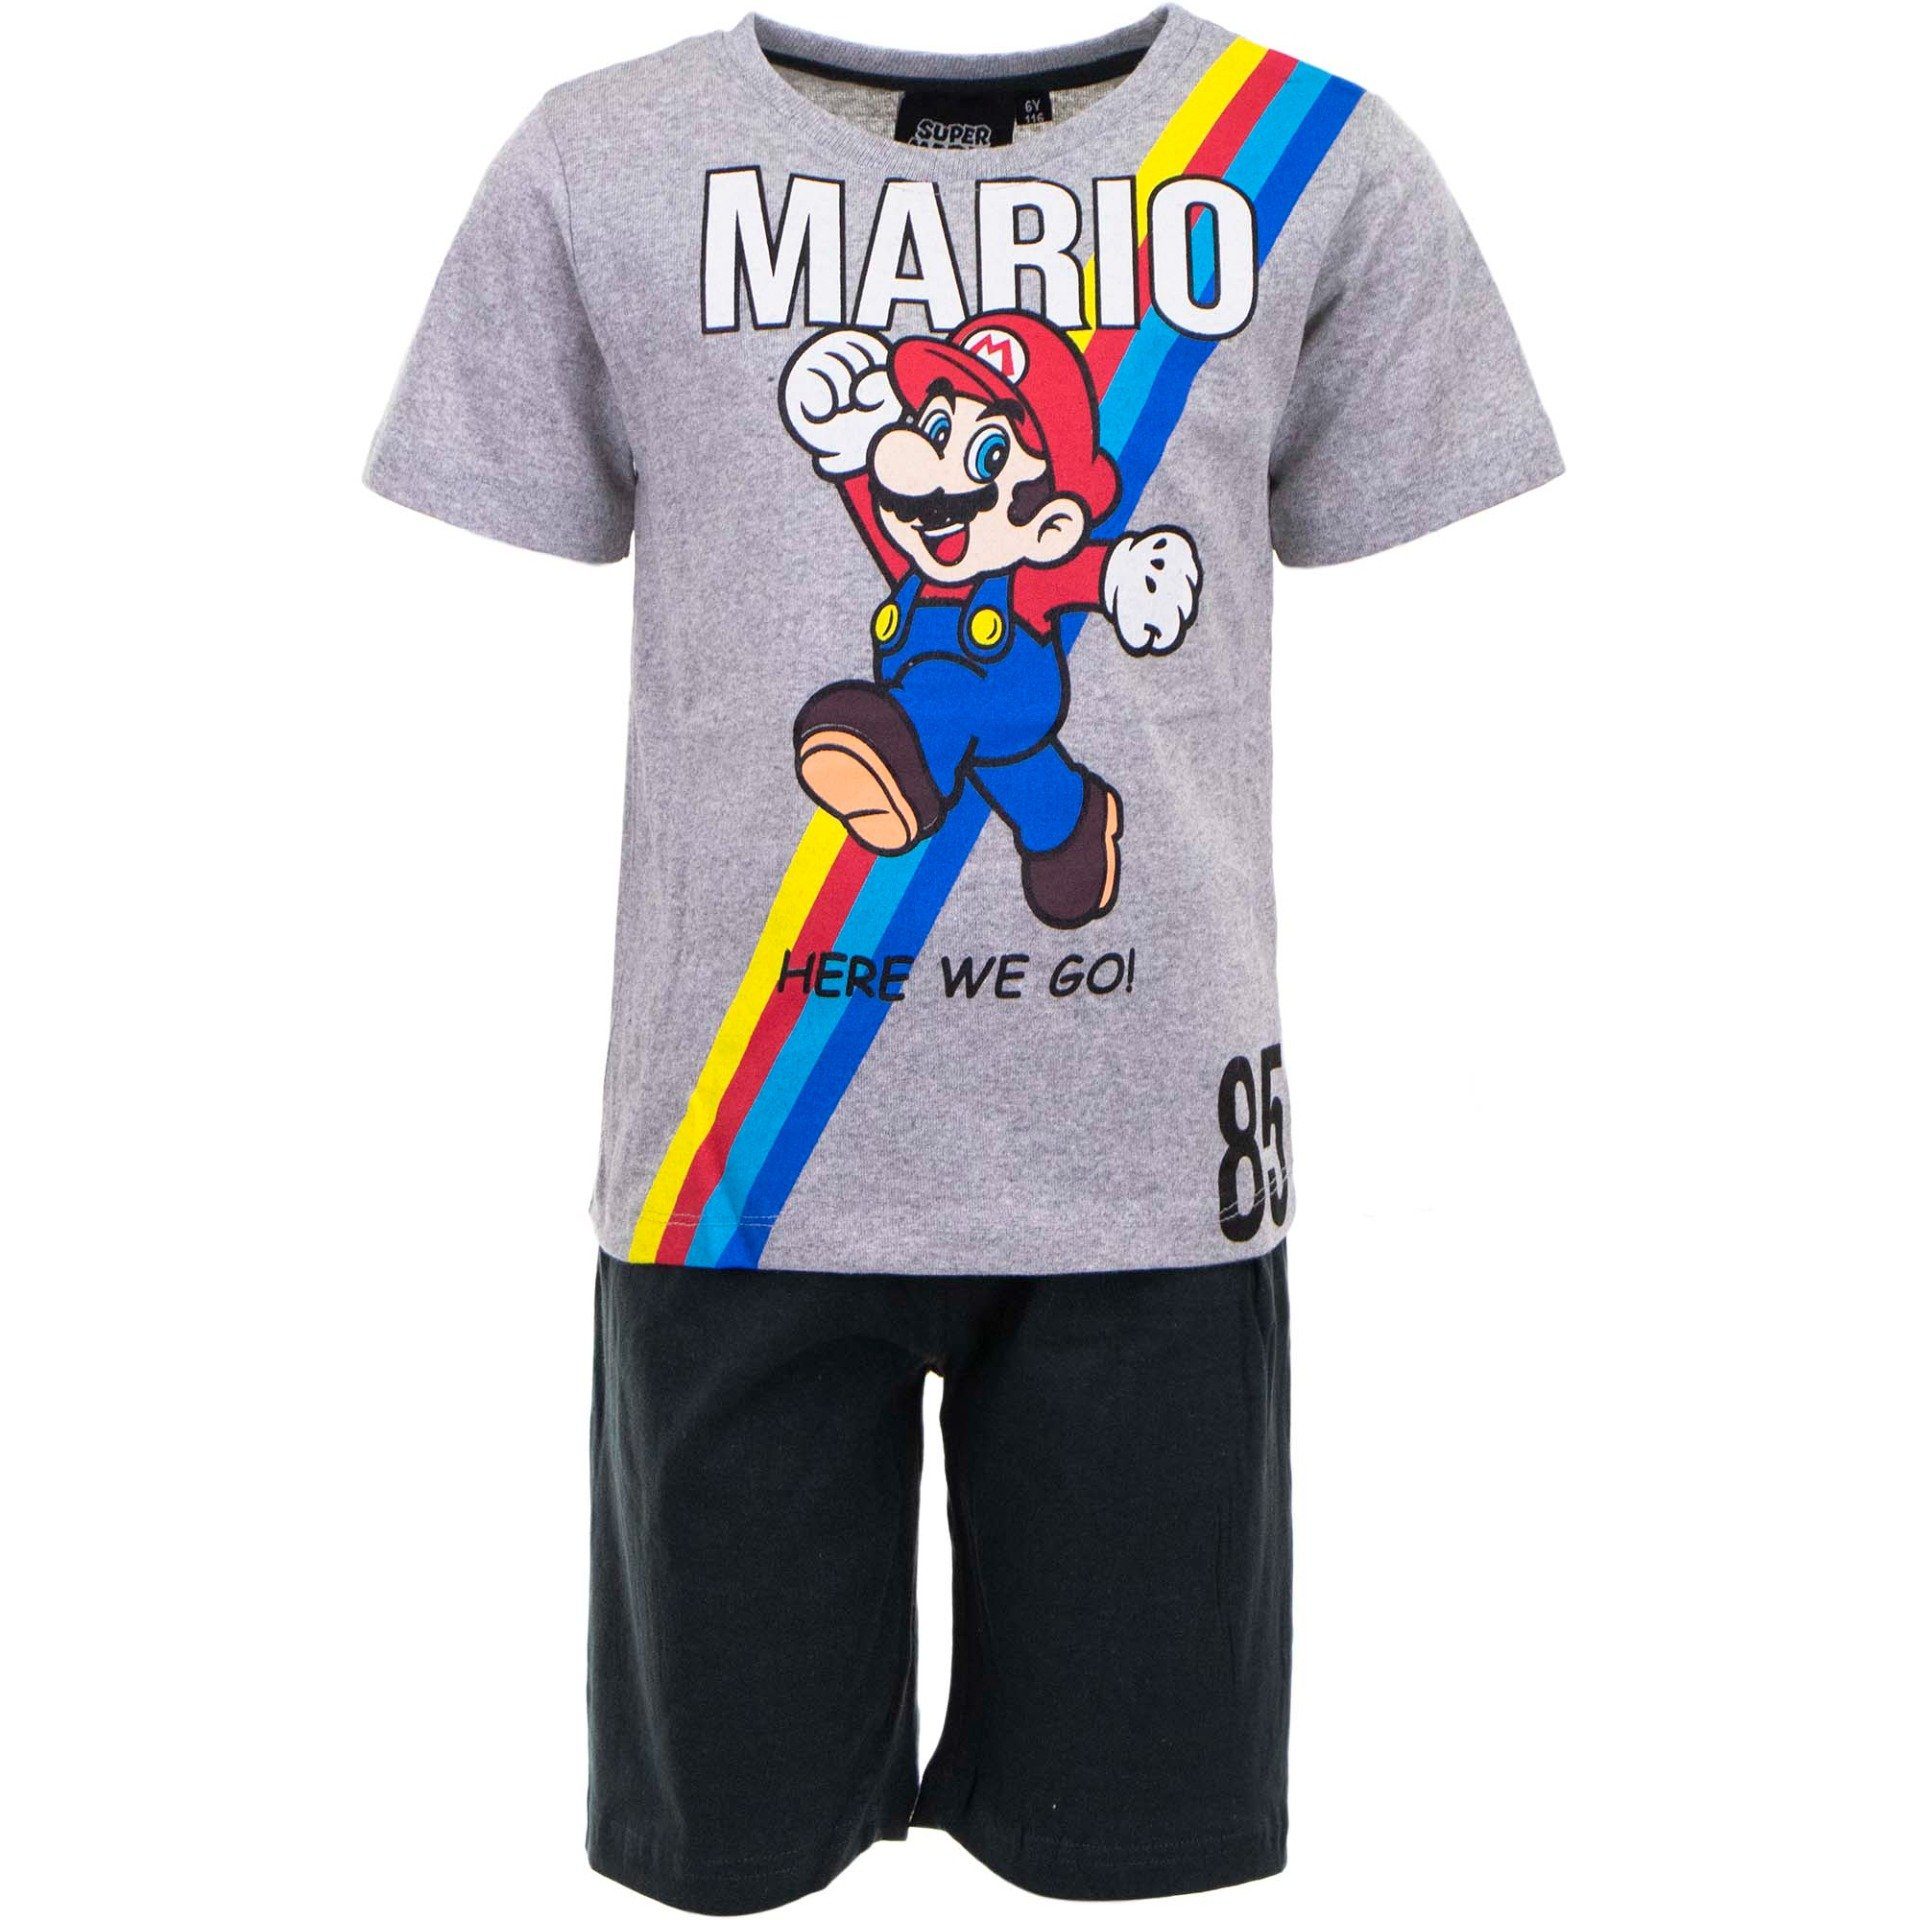 Super Mario Pyjama SUPER MARIO SHORTY PYJAMA Kinder Schlafanzug Jungen + Mädchen 3 4 5 6 7 8 Jahre Gr. 98 104 110 116 122 128